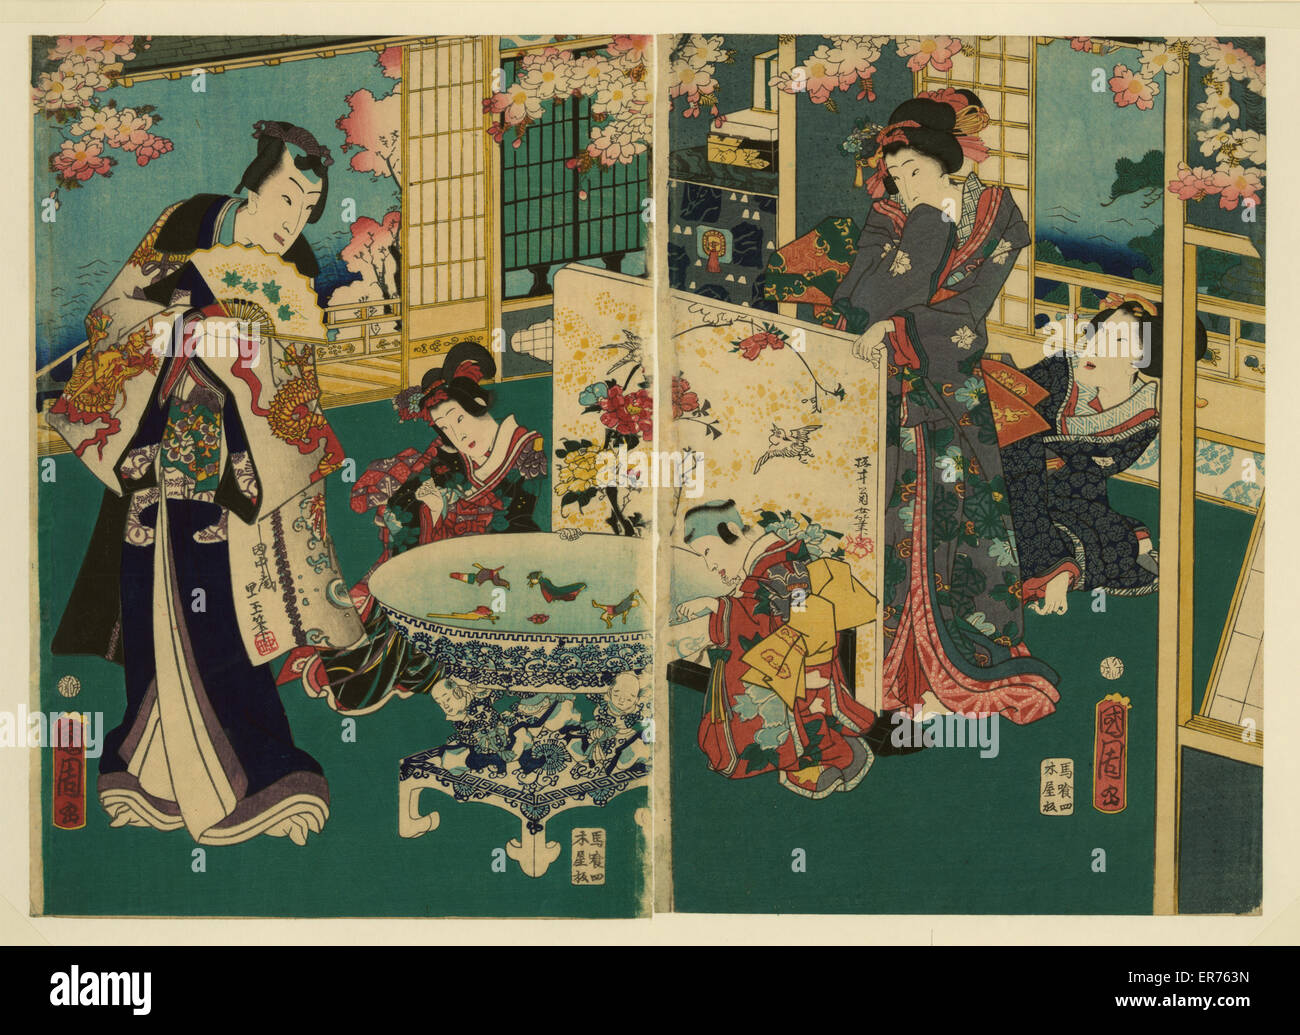 Blühleistung. Ukiyo-e Diptychon zeigt Reich gekleideter Mann, zwei Kinder und zwei Frauen in einem reich ausgestatteten Innenraum. Datum 1862. Stockfoto